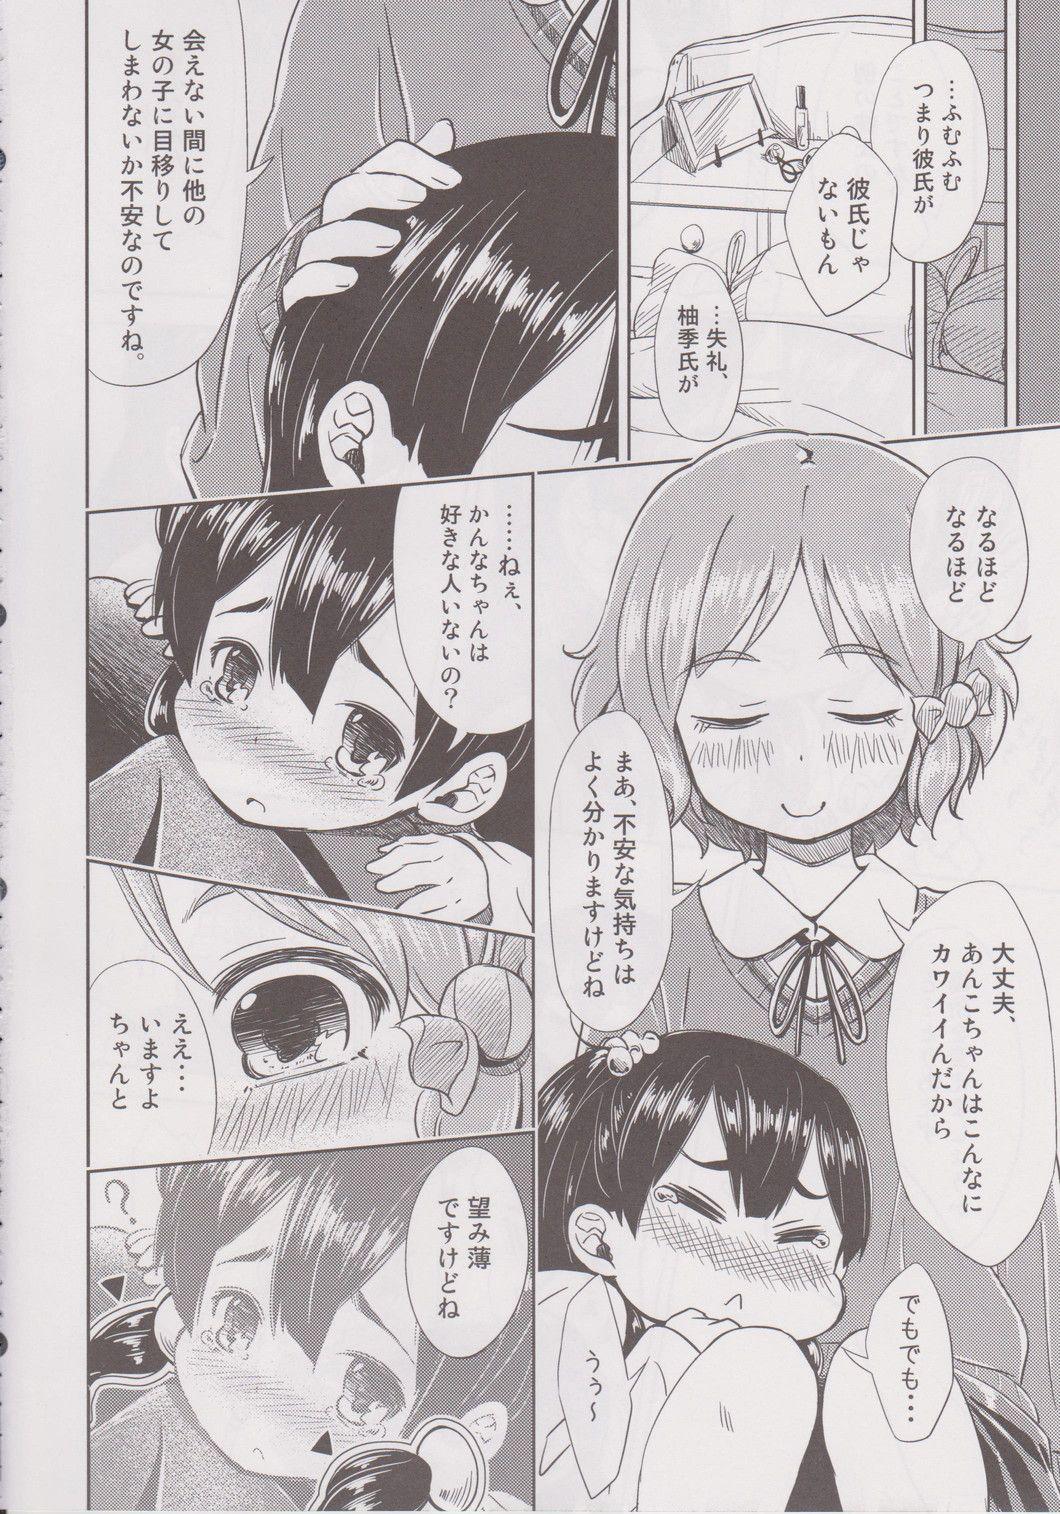 Bunda Lovely Girls' Lily vol.6 - Tamako market Sex Party - Page 7